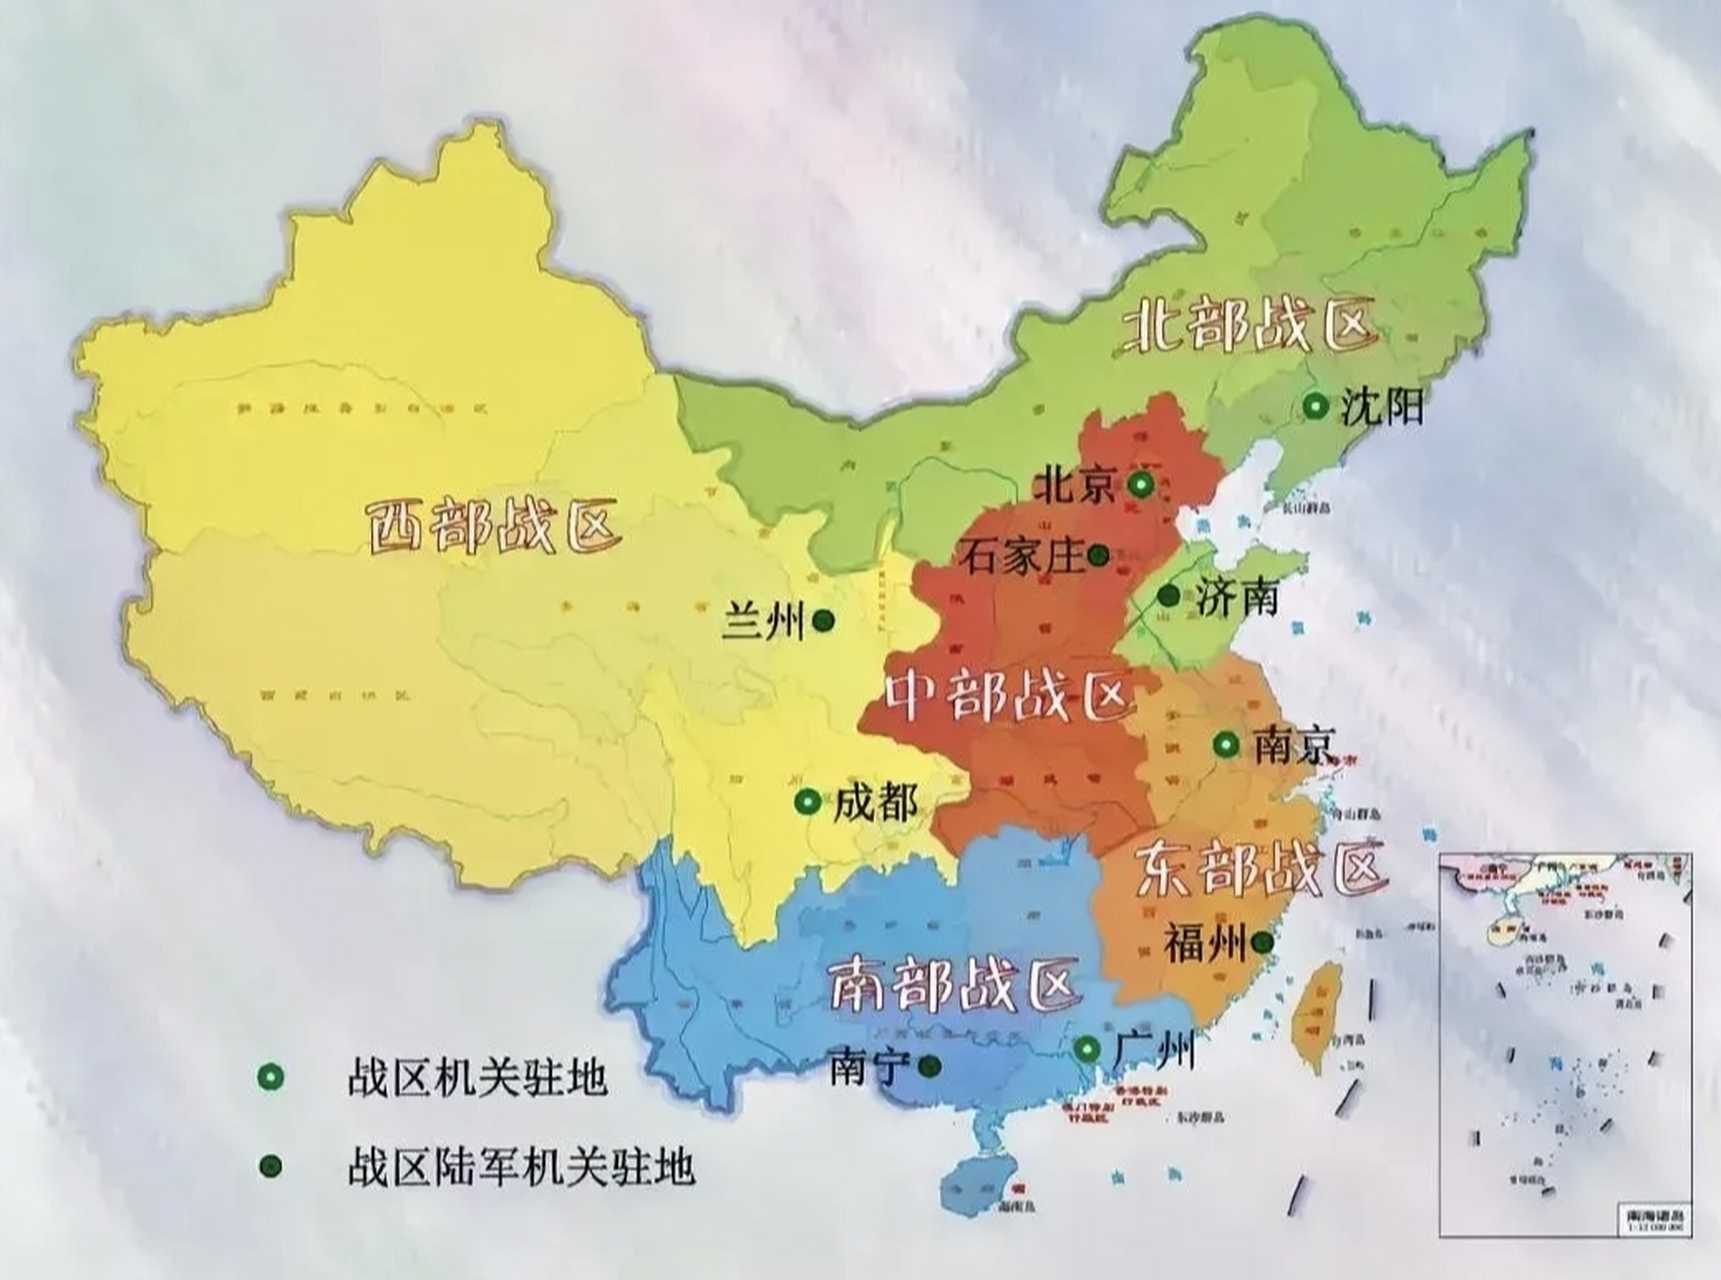 中国四大战区划分图图片